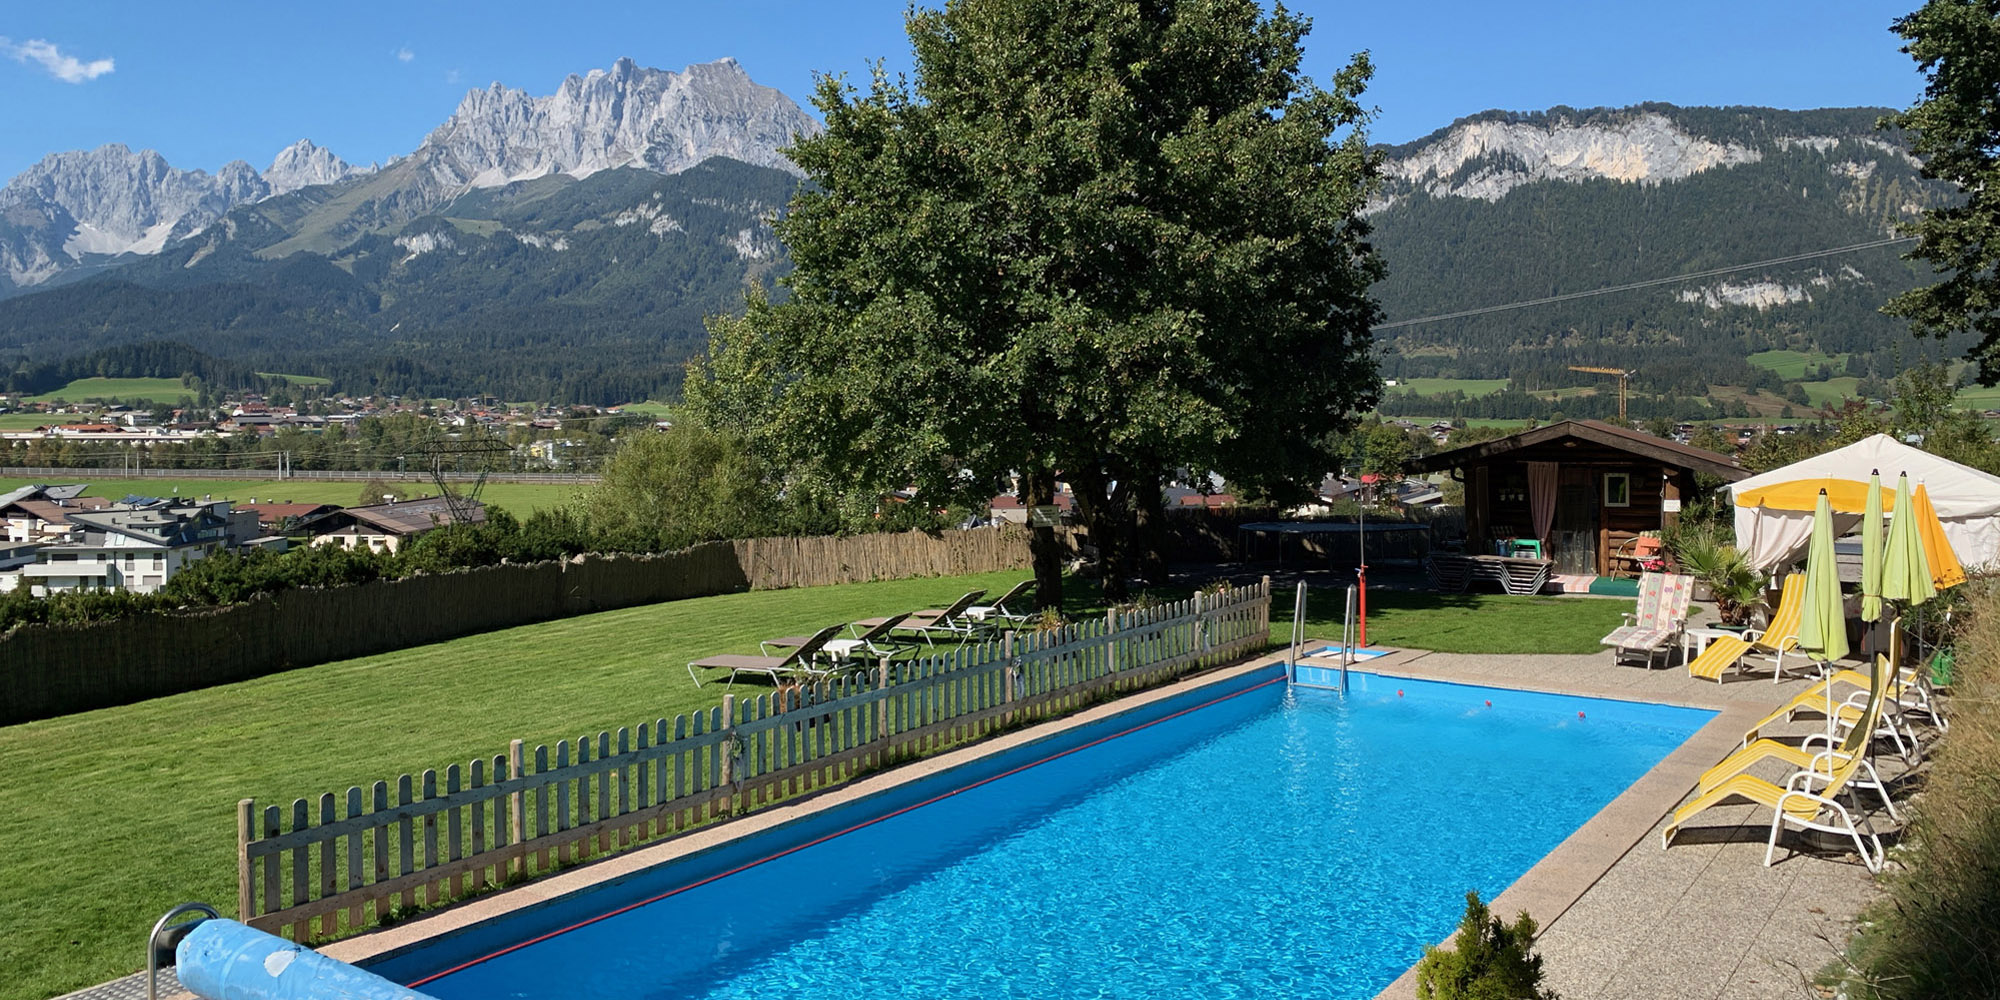 Ferienwohnung St. Johann in Tirol beheizter Außenpool Familienurlaub